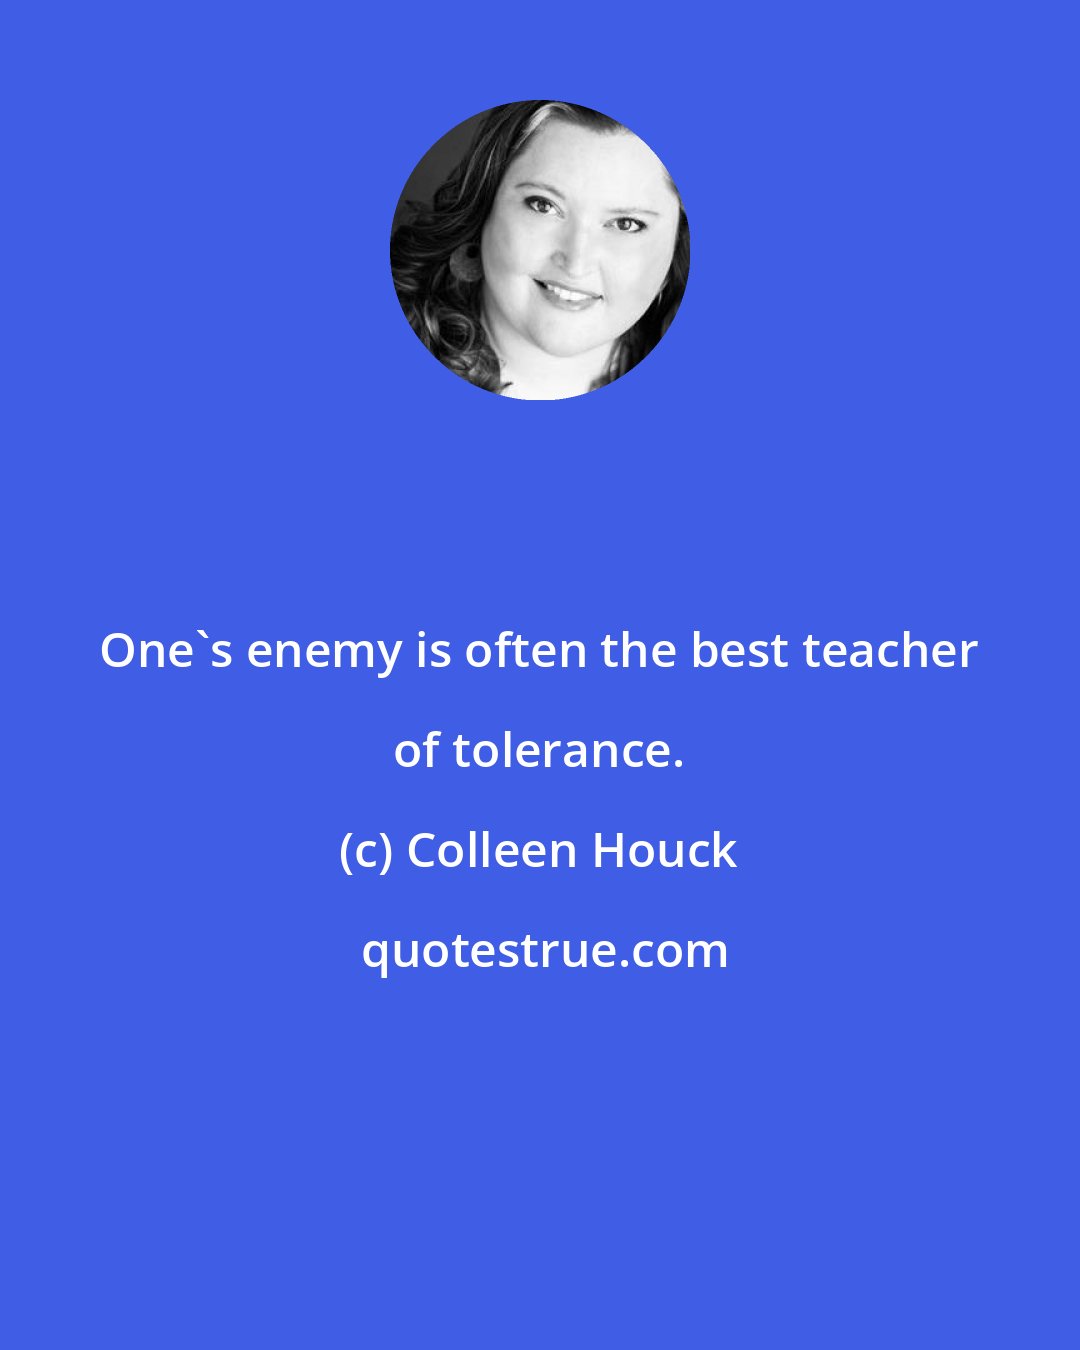 Colleen Houck: One's enemy is often the best teacher of tolerance.